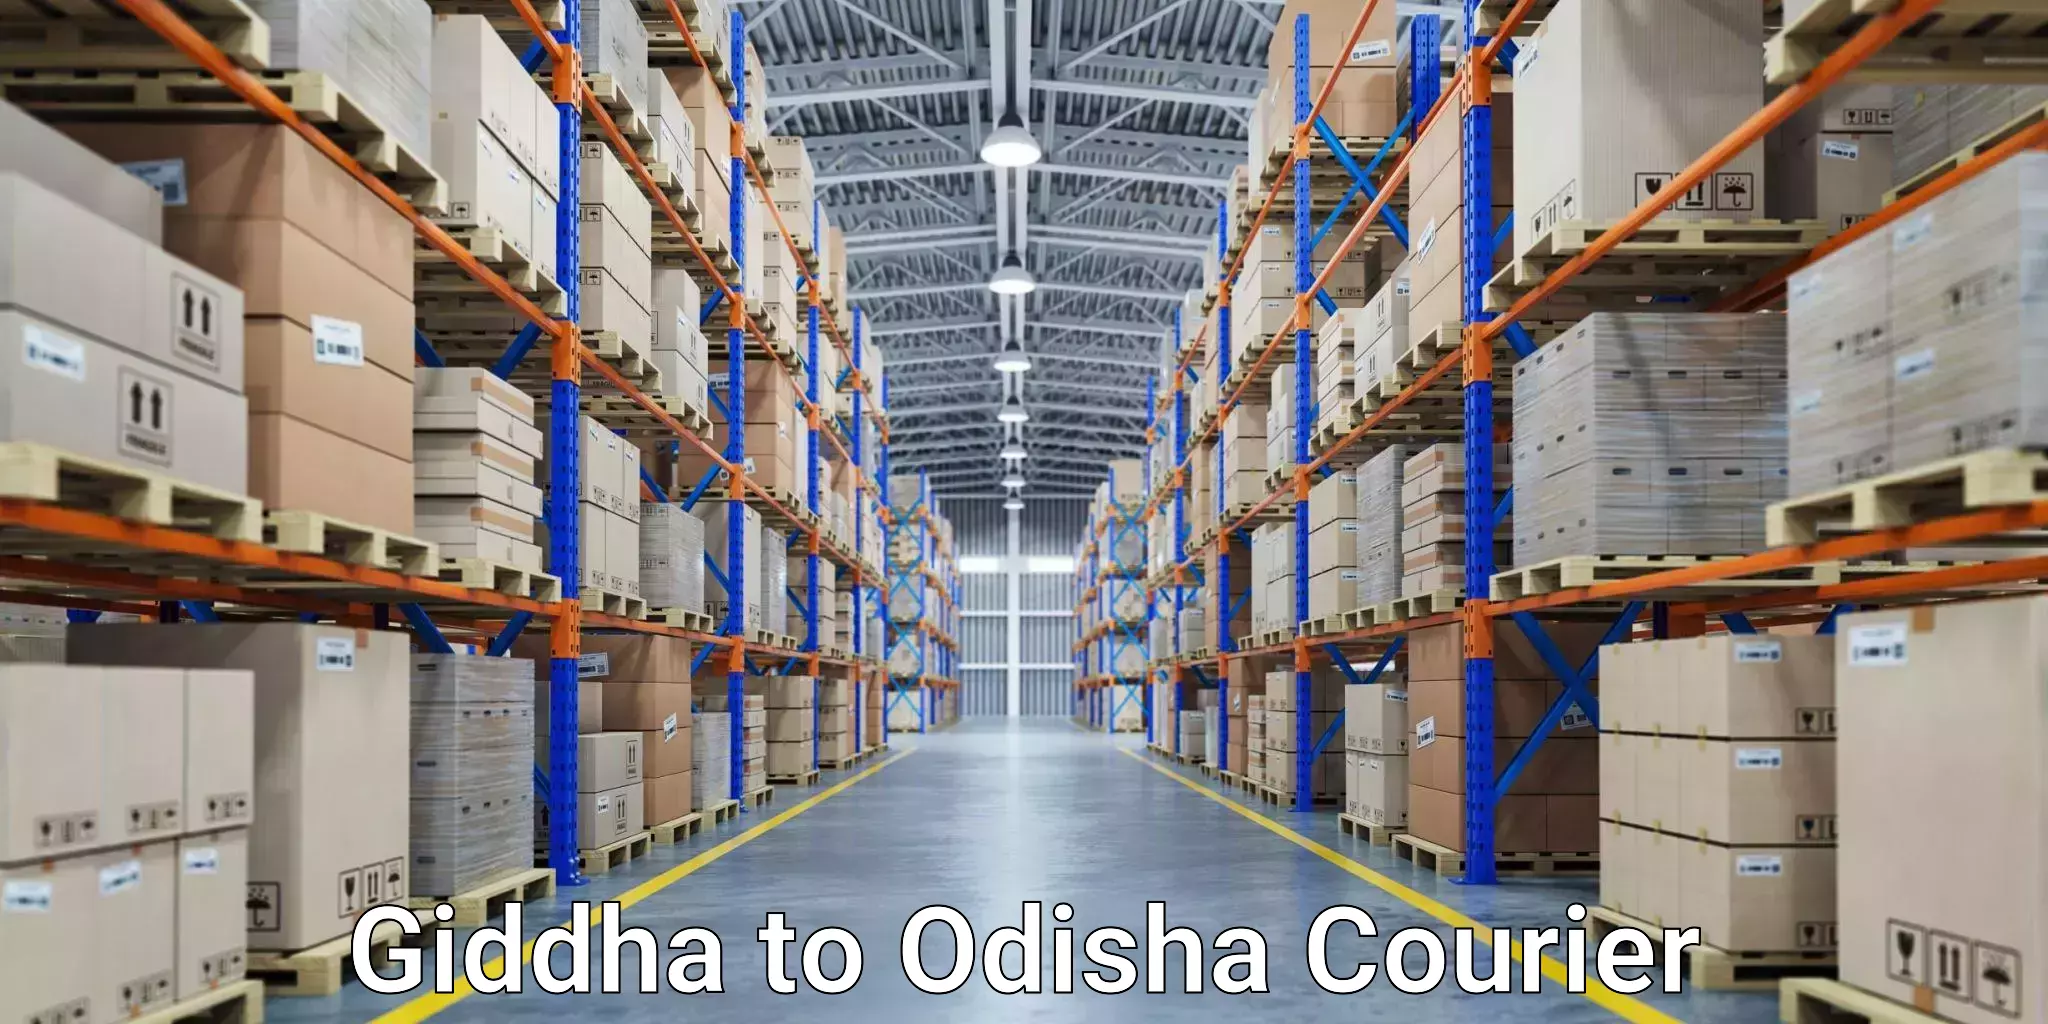 Customizable delivery plans Giddha to Odisha